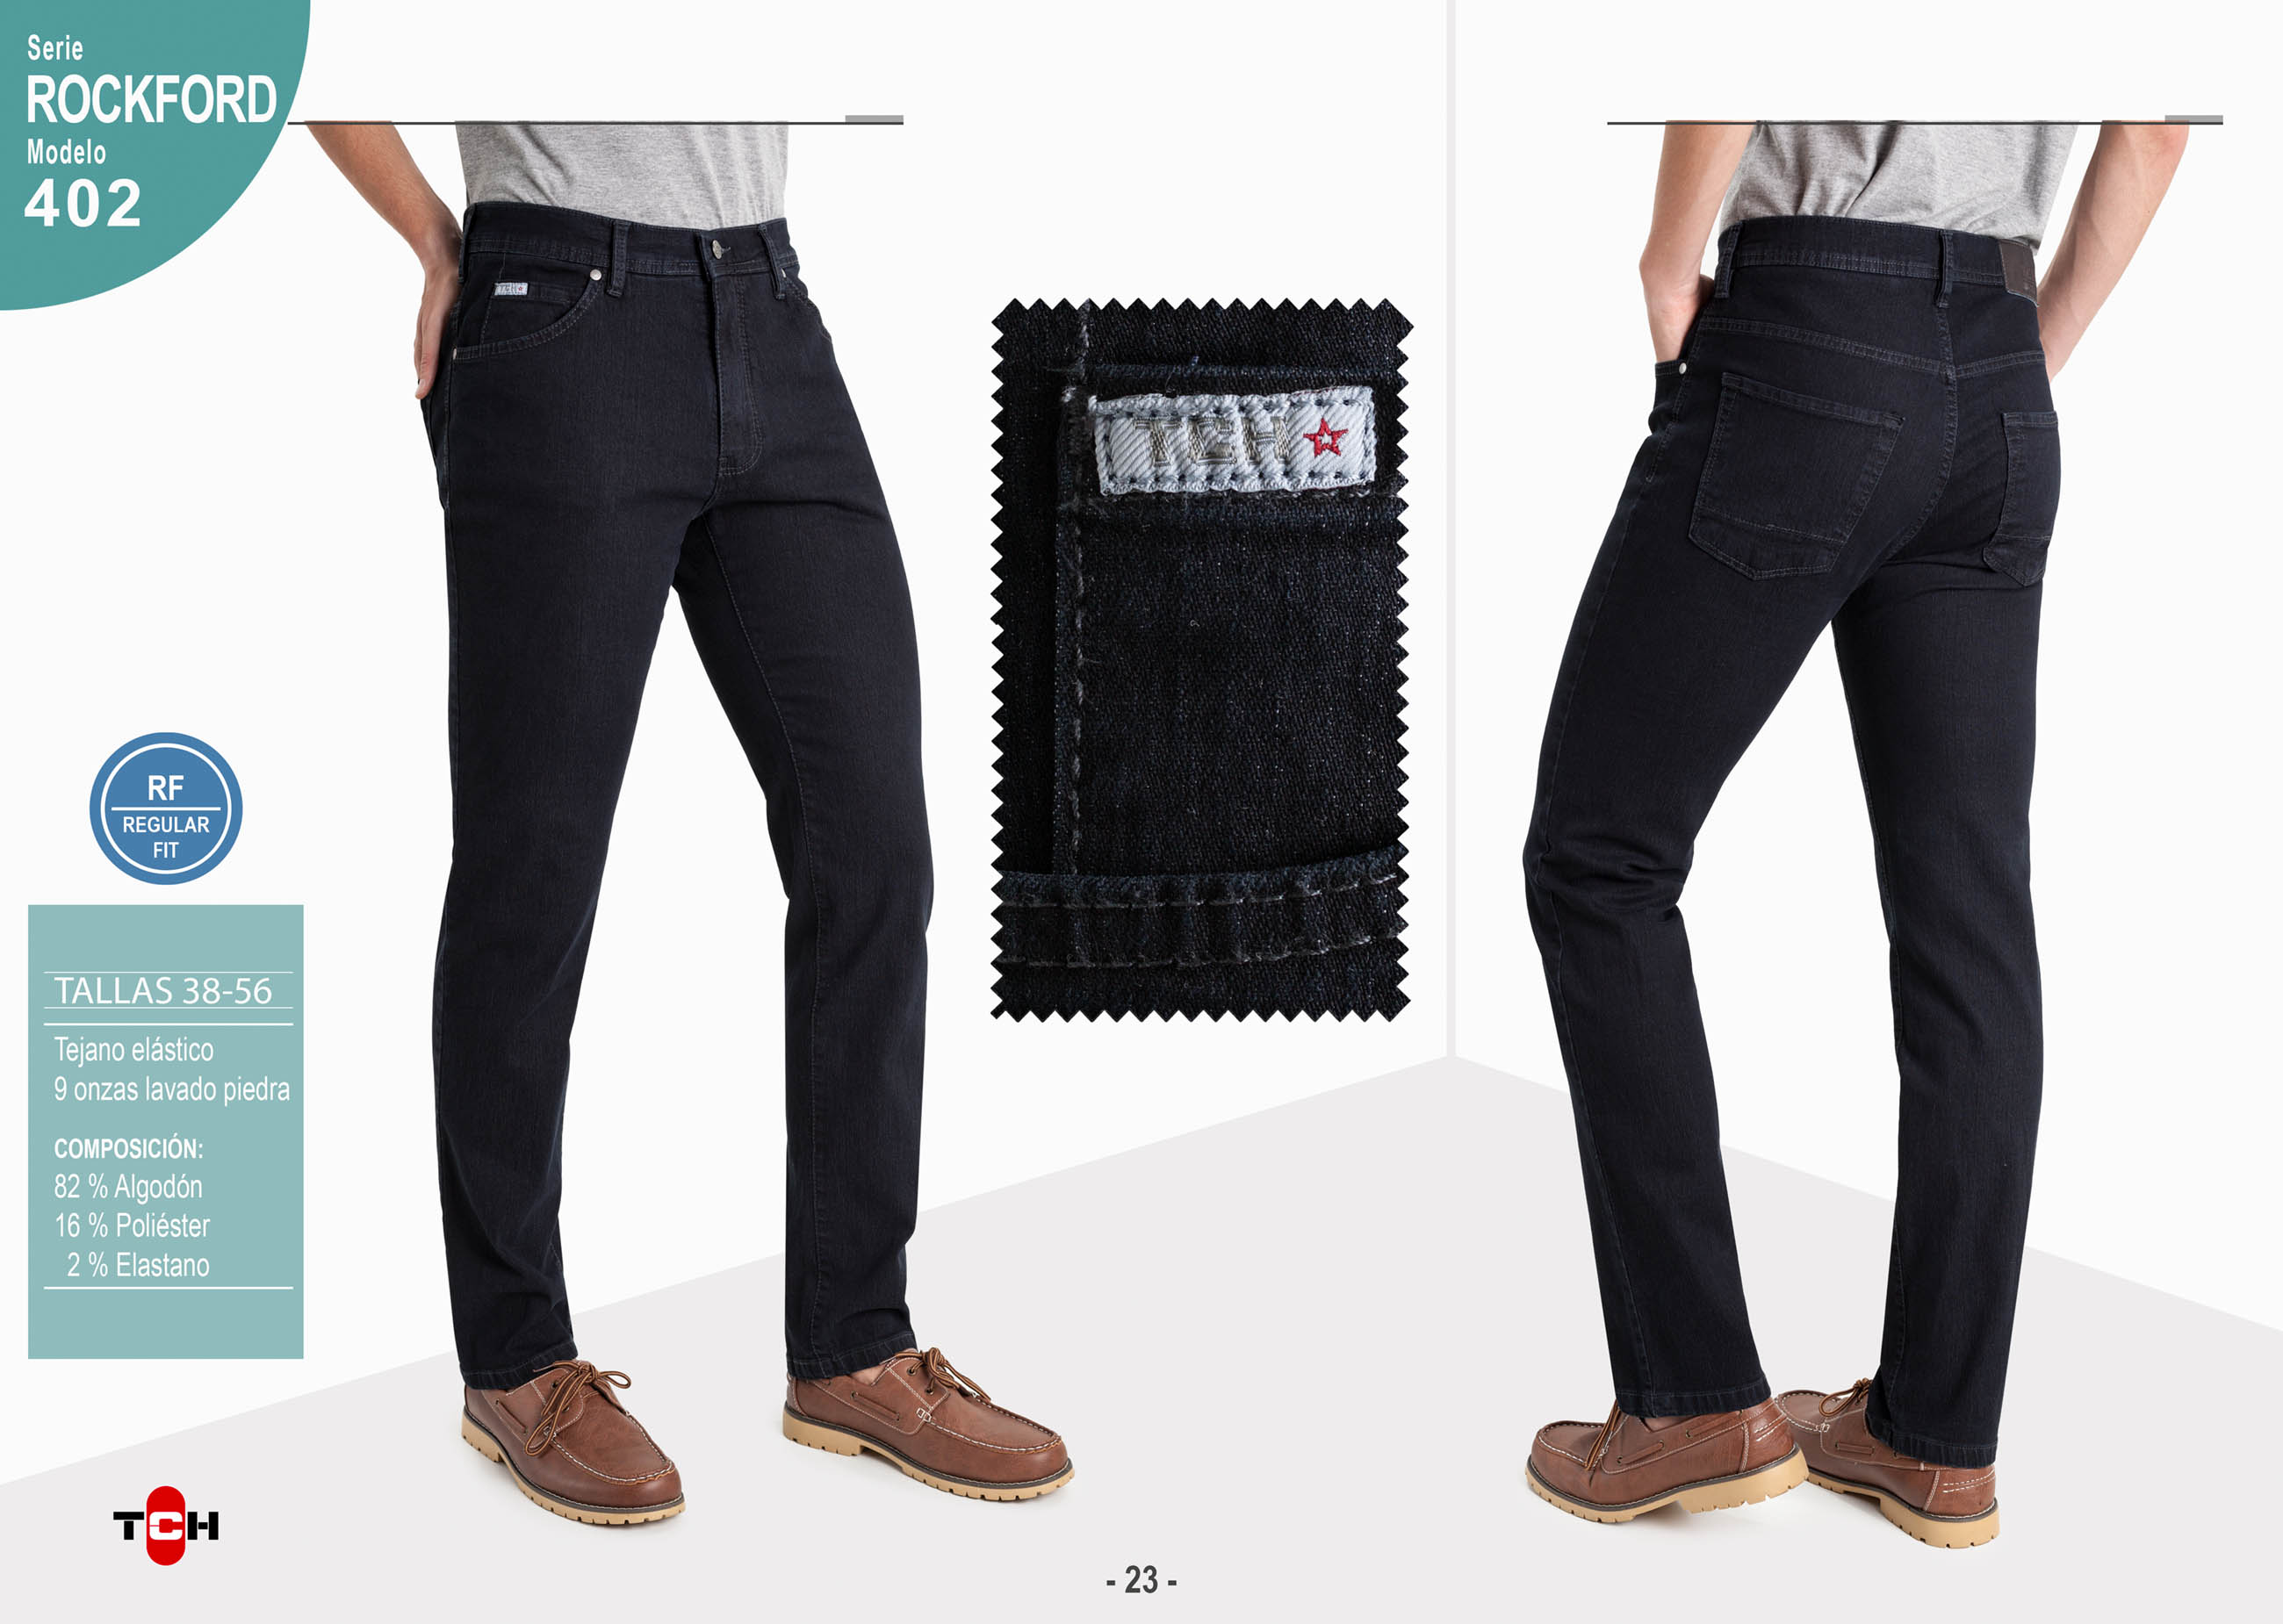 Pantalón vaquero para hombre Jeans 5 bolsillos de vaquero negro de algodón, poliester con lycra e hilo a contraste